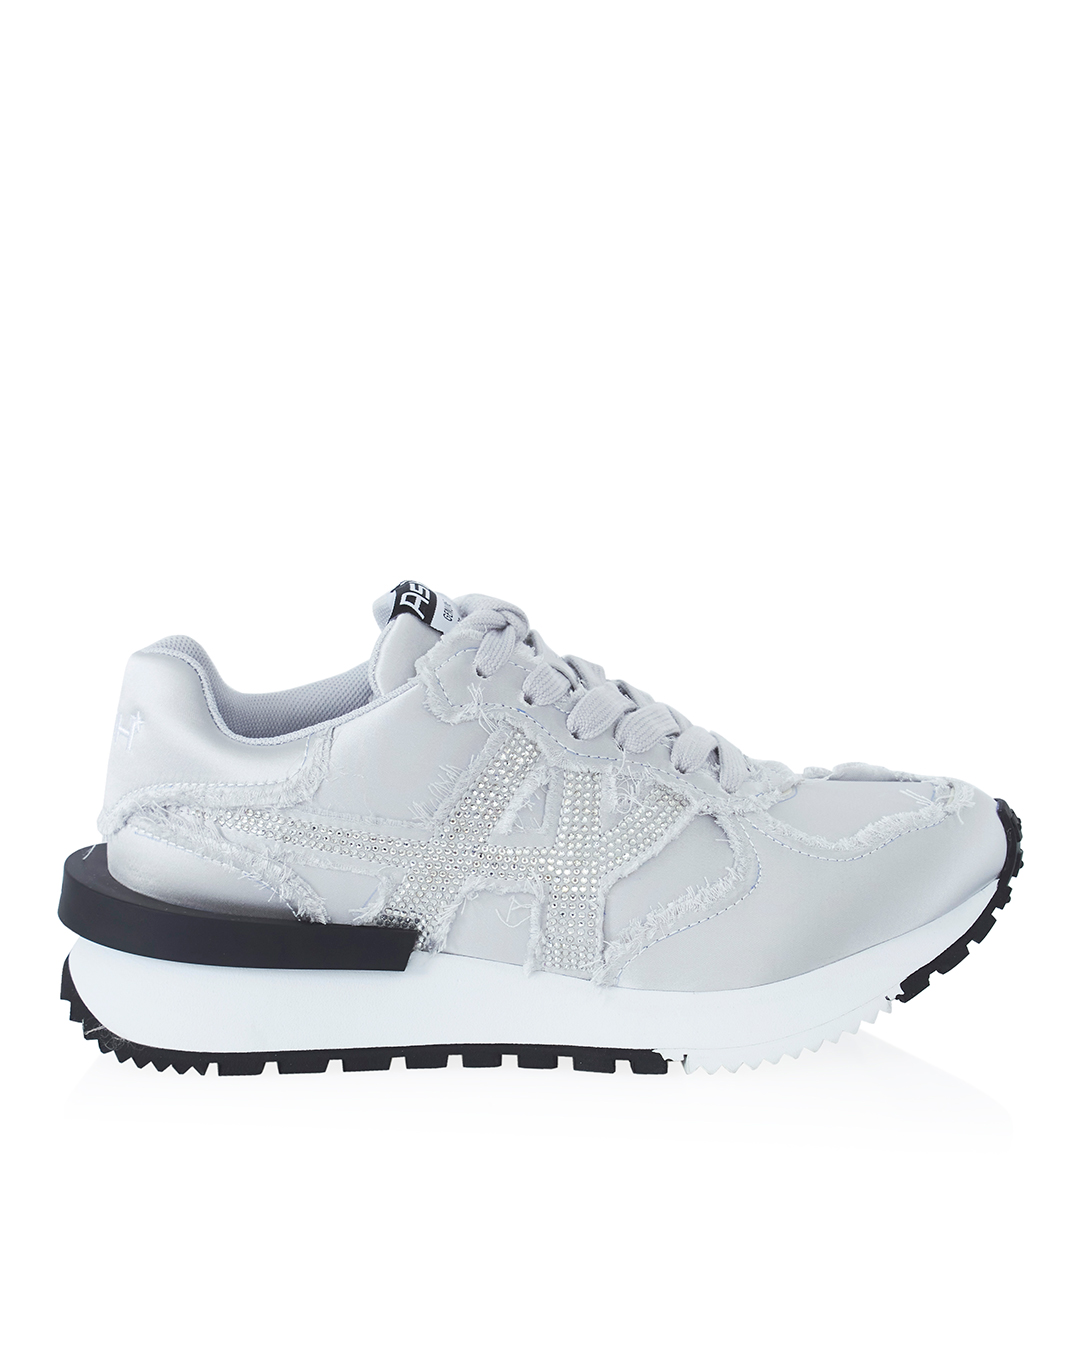 текстильные кроссовки TOXIC ASH 8AH.AH124904.T серебряный+белый 36, размер 36, цвет серебряный+белый